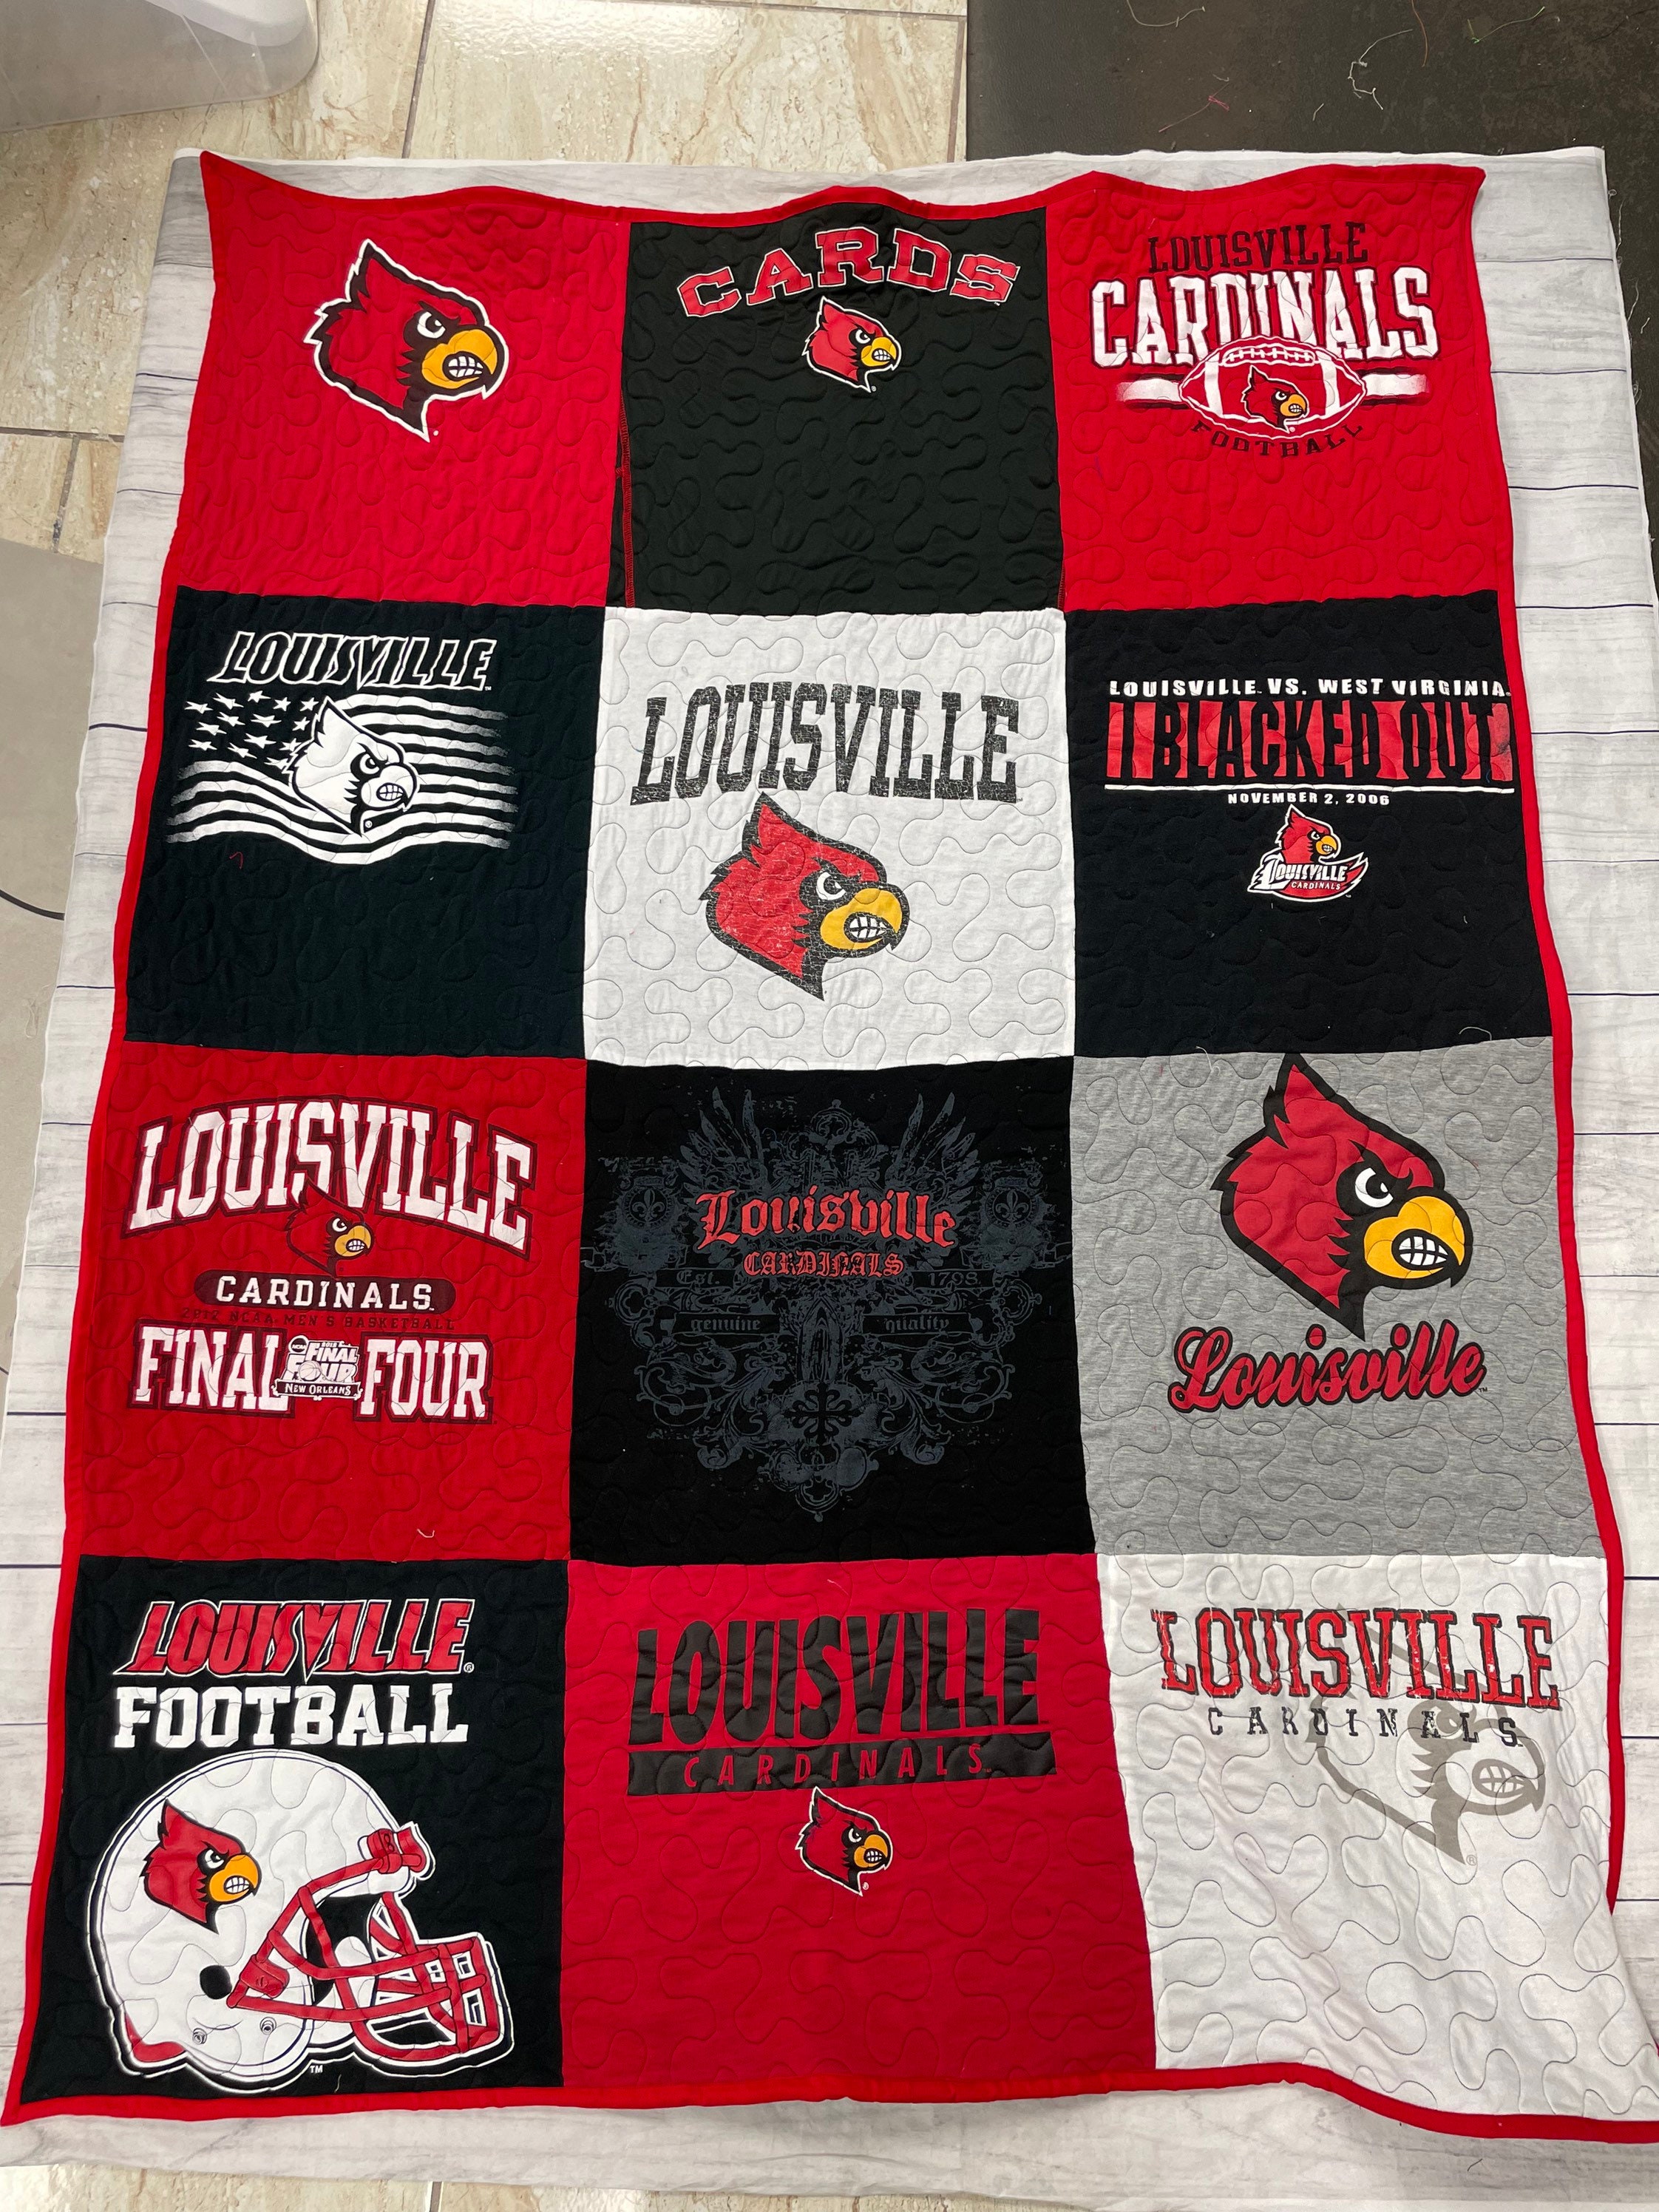 Louisville Cardinals Sherpa Fleece Blanket Gifts for NCAA Fans 001 - Sherpa  Blanket